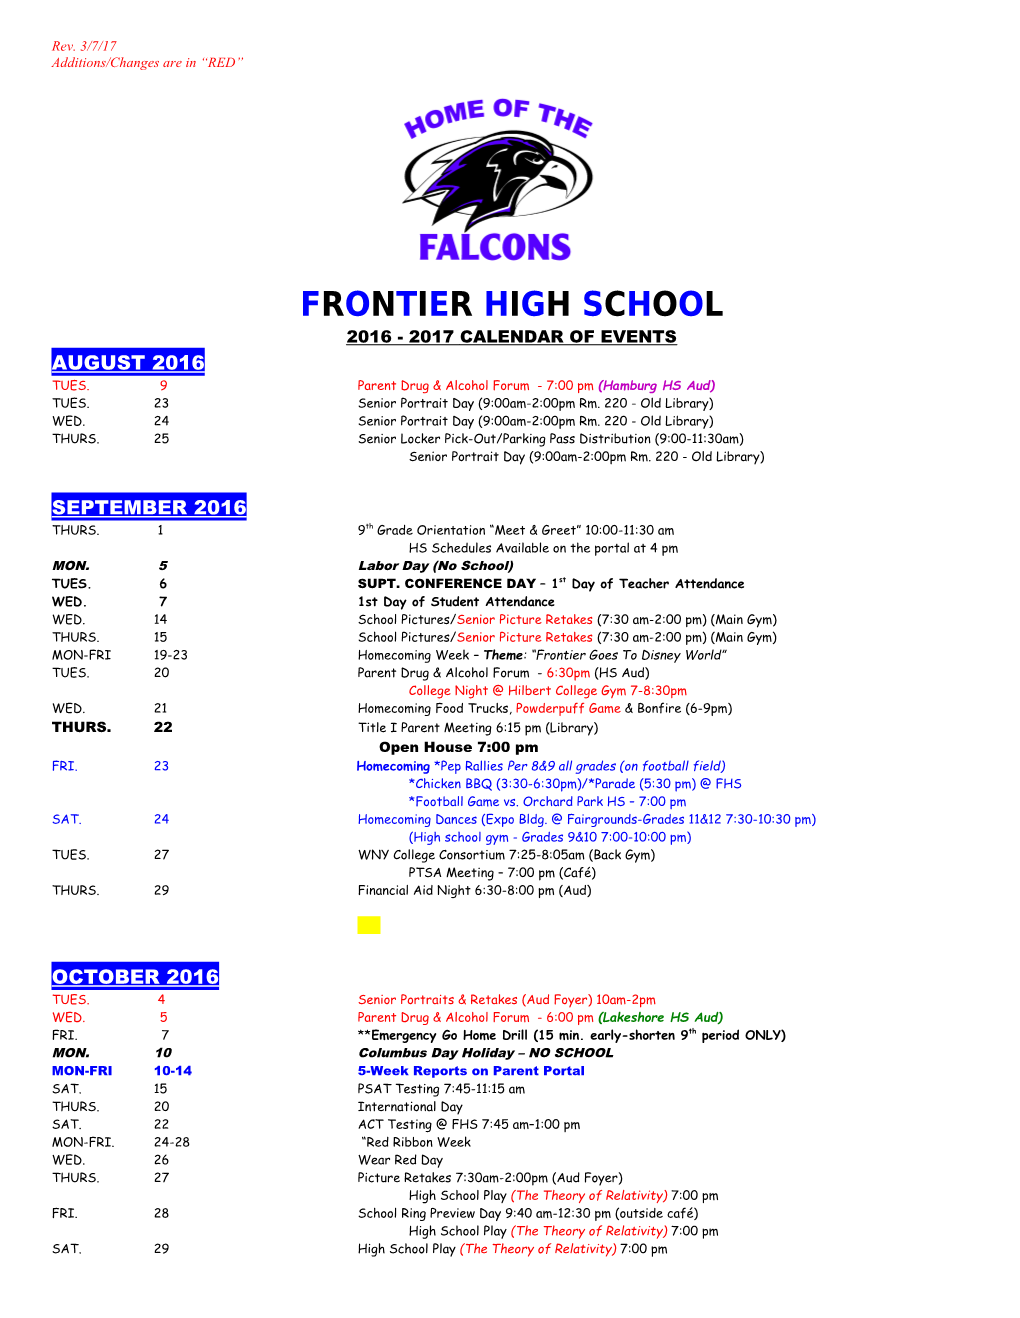 Frontier High School